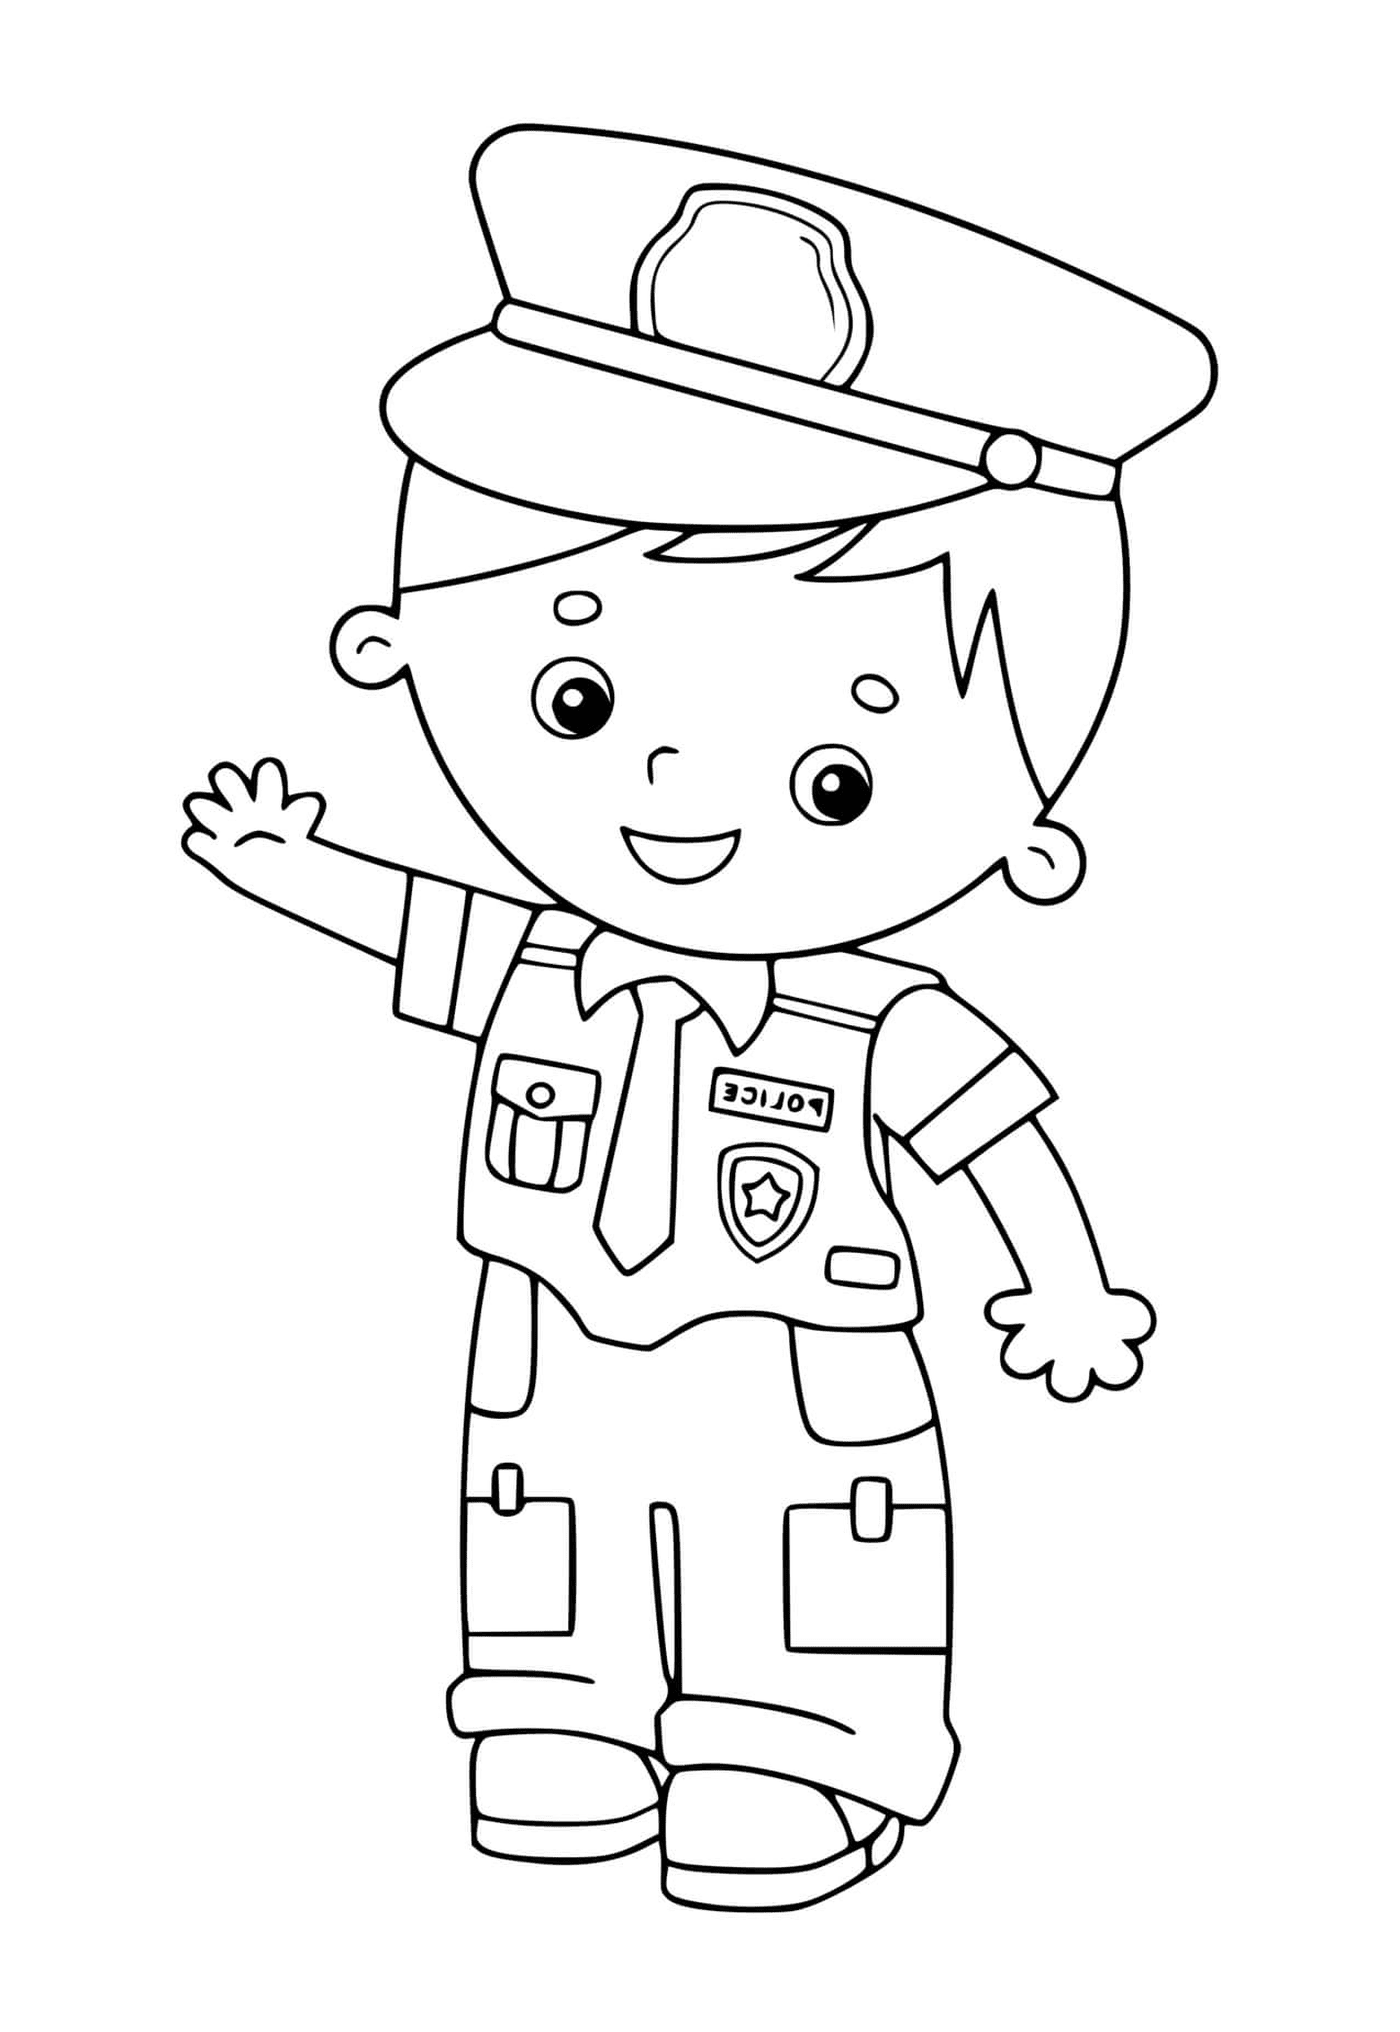  Kind in Polizeiuniform 